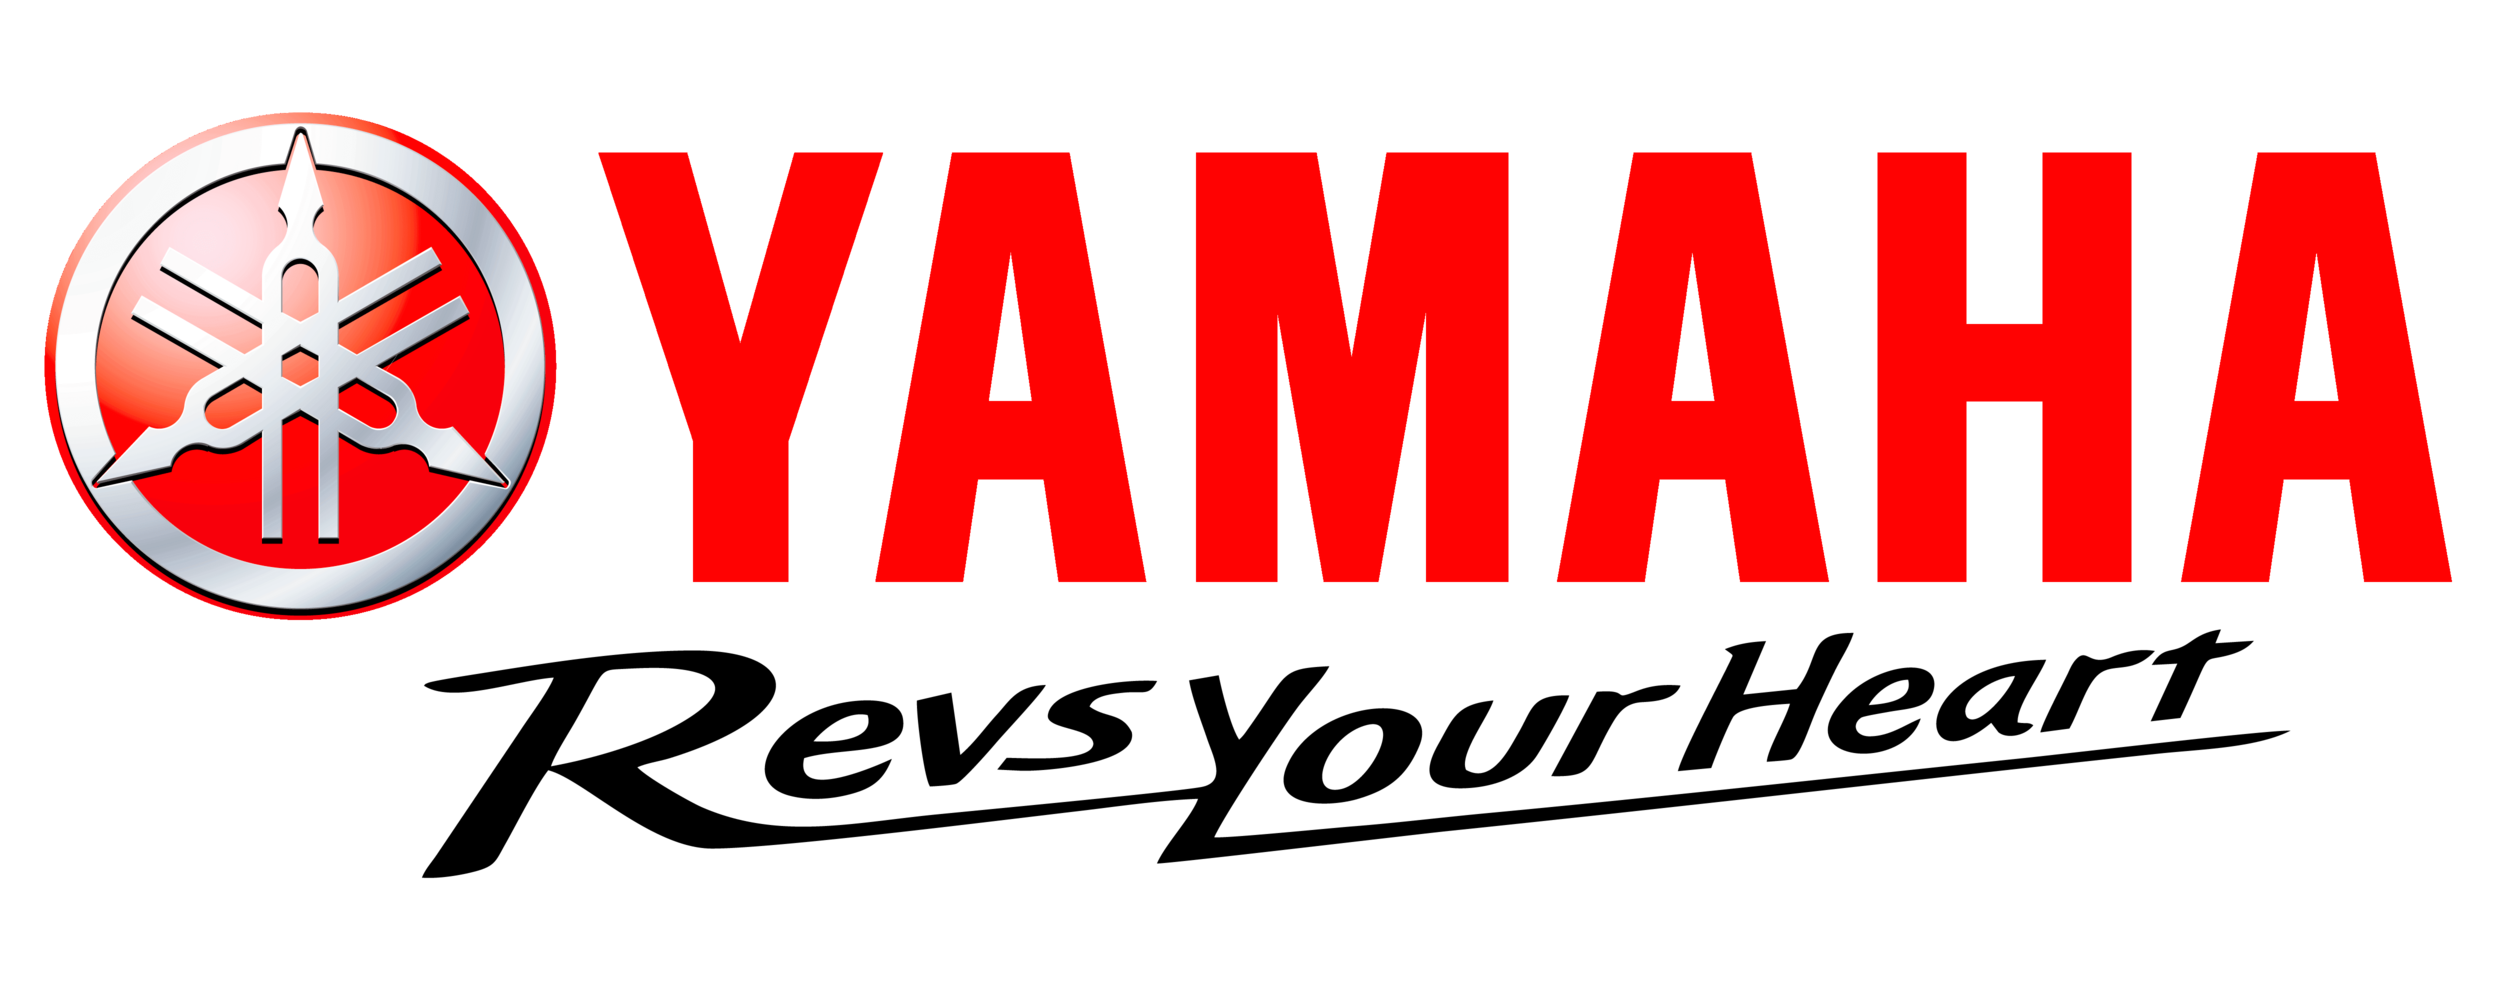 Yamaha-Motorcycles-Logo.png